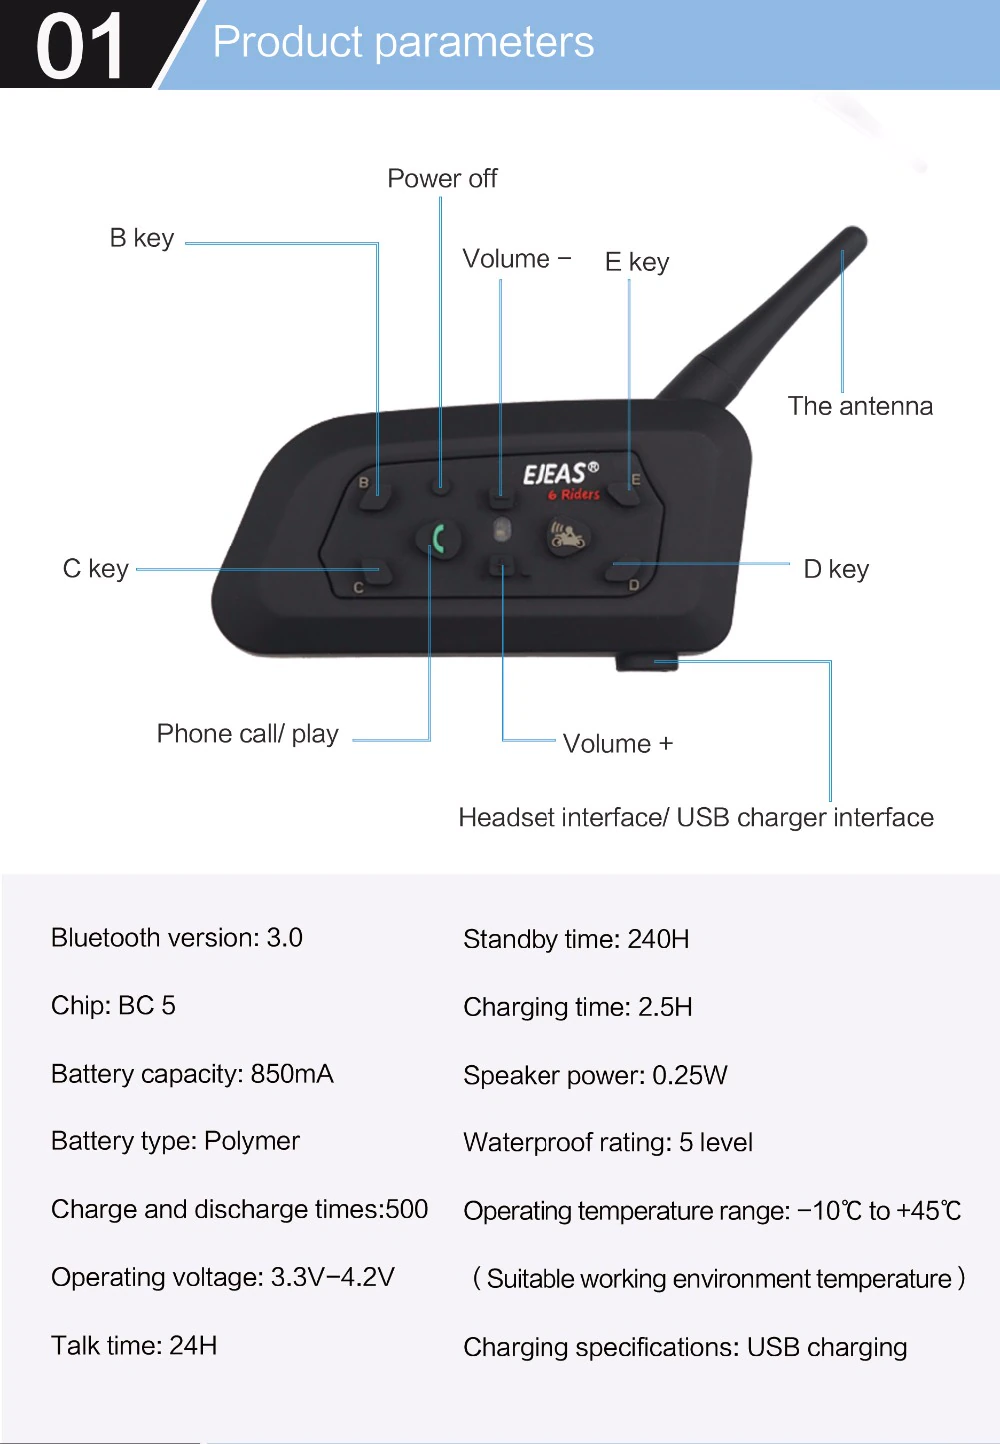 Auriculares intercomunicador EJEAS V6 PRO Bluetooth para